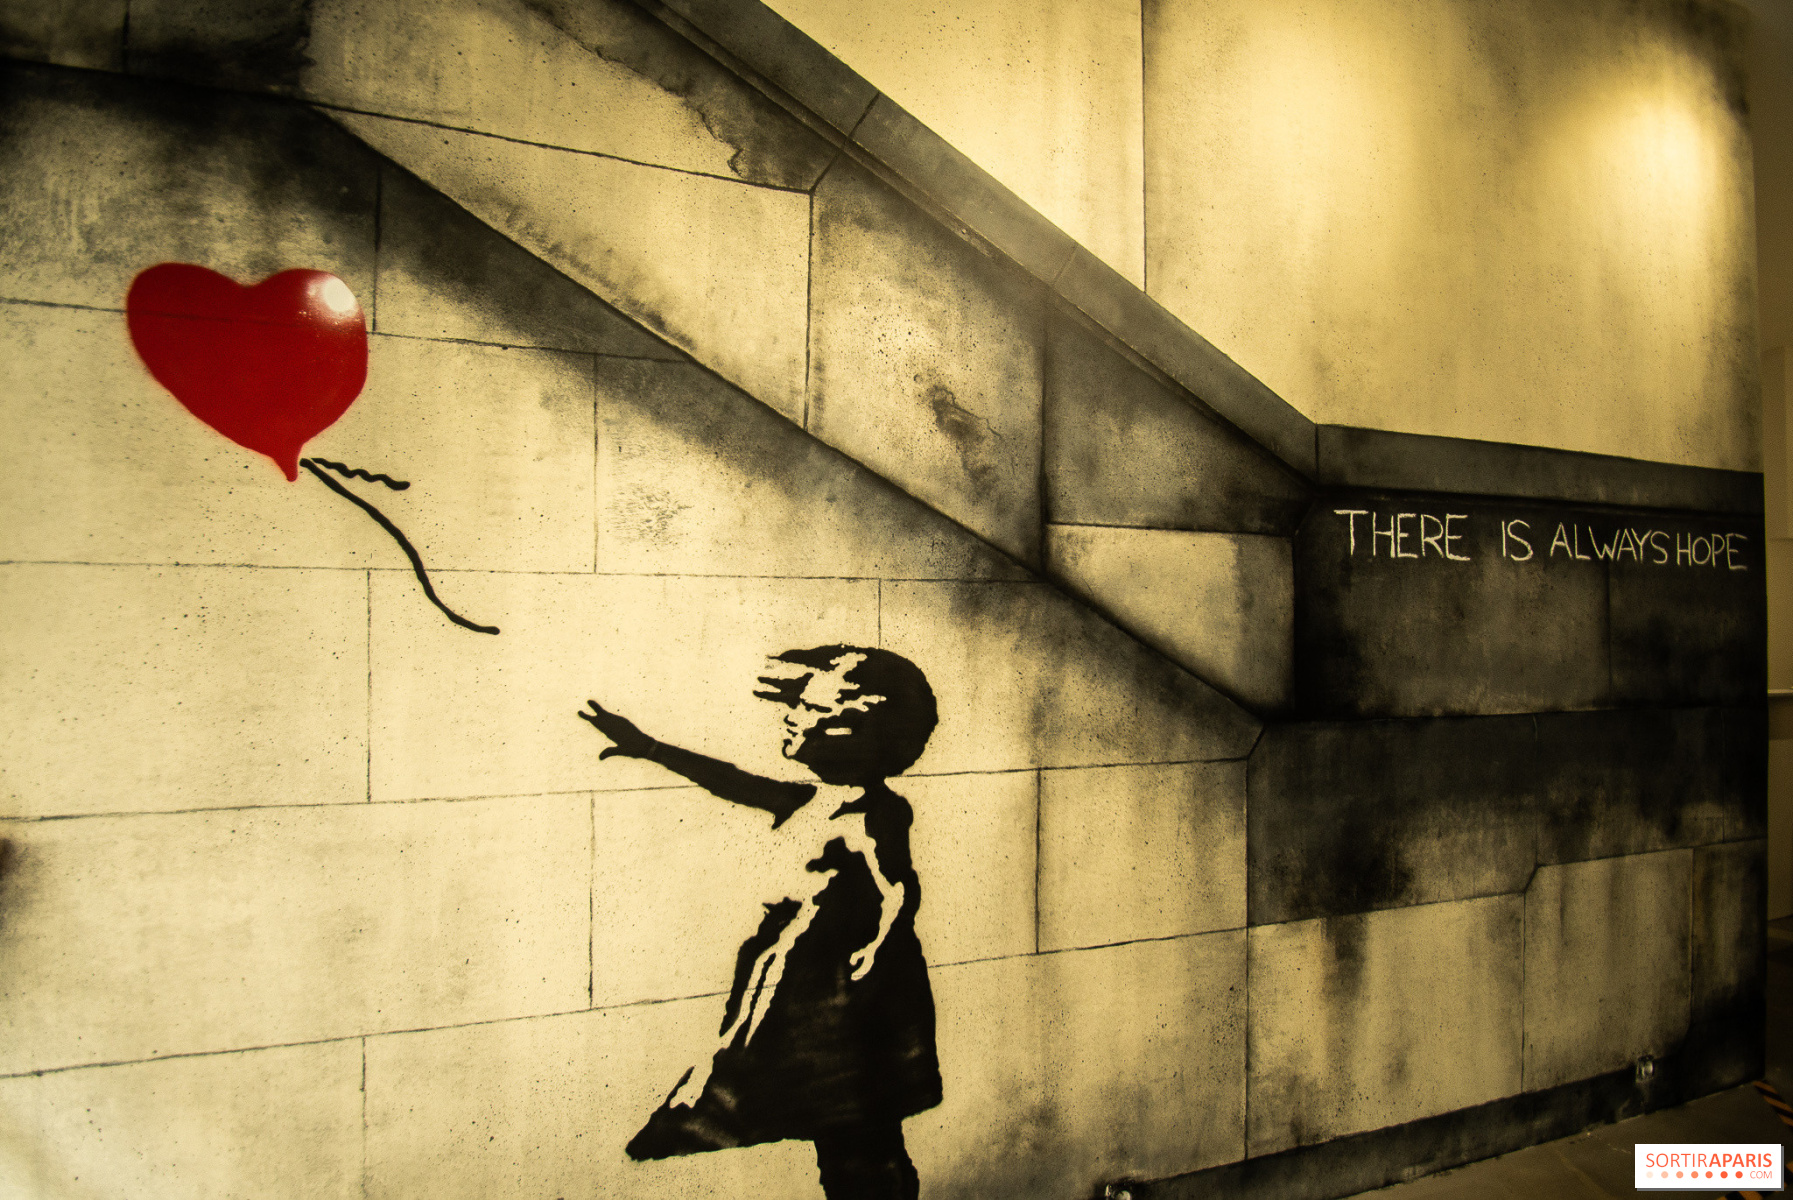 La fille au Ballon », le tableau de Banksy qui s'était autodétruit, revient  aux enchères